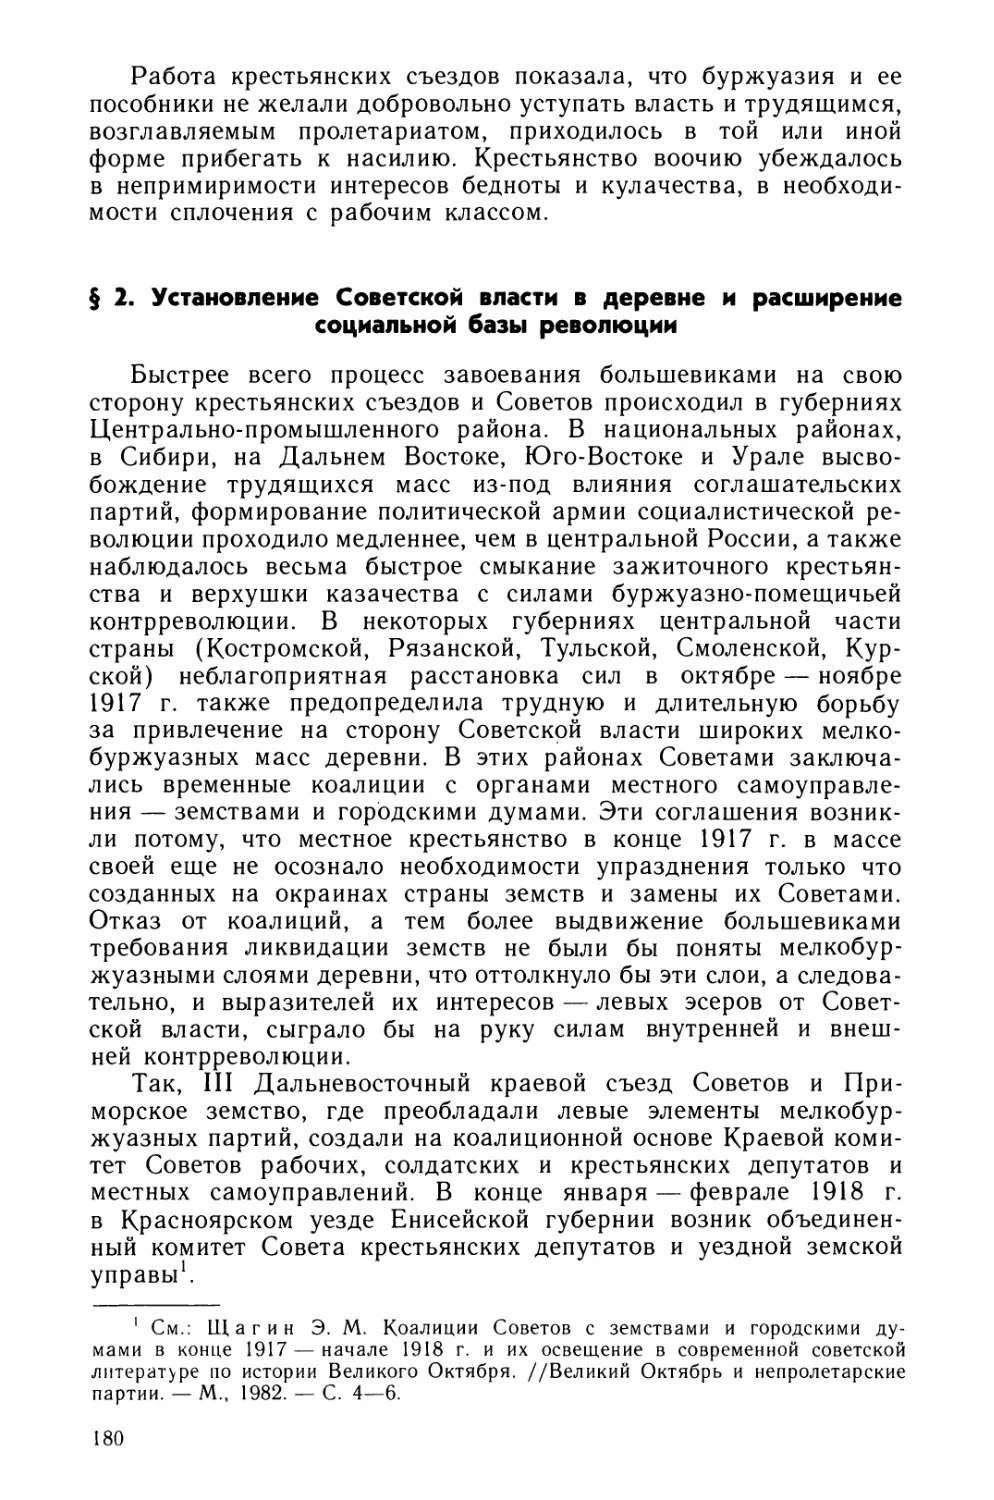 § 2. Установление Советской власти в деревне и расширение социальной базы революции